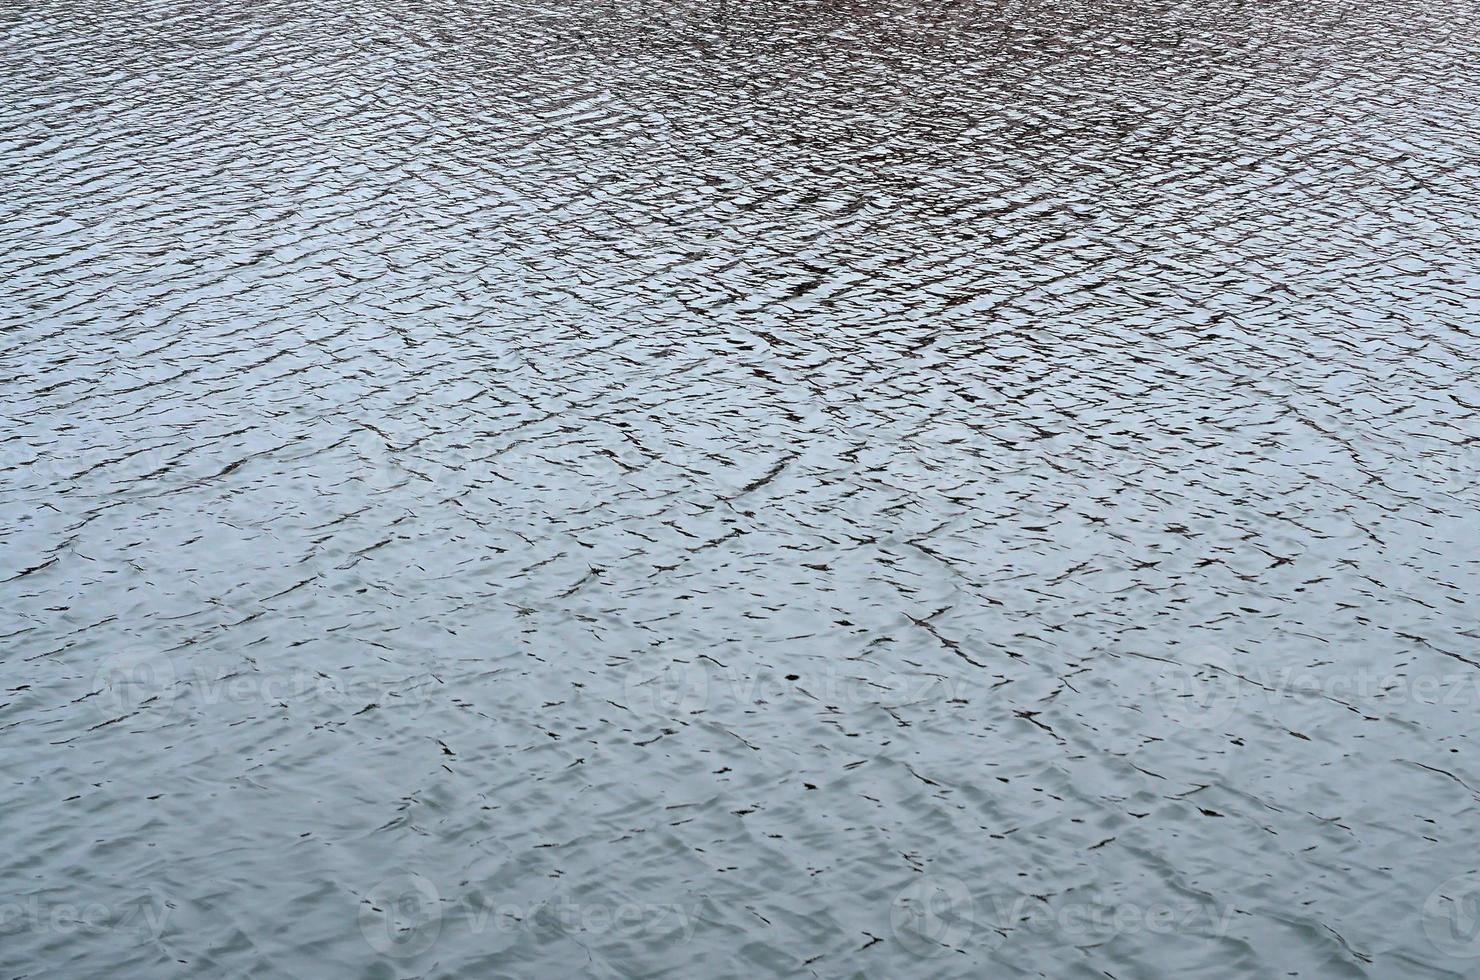 la textura del agua en el río bajo la influencia del viento. muchas olas poco profundas en la superficie del agua foto